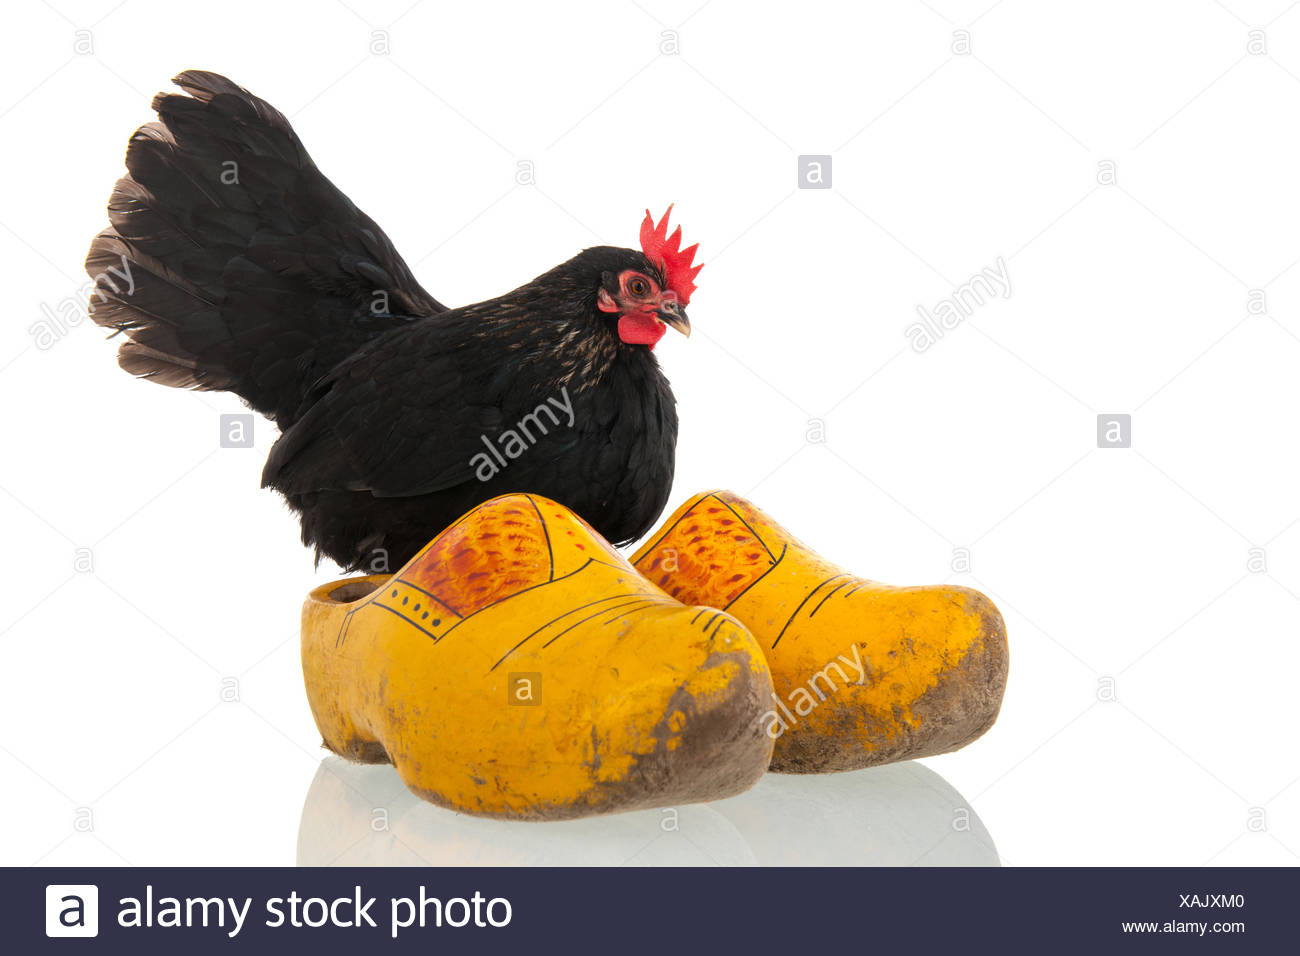 chicken clogs